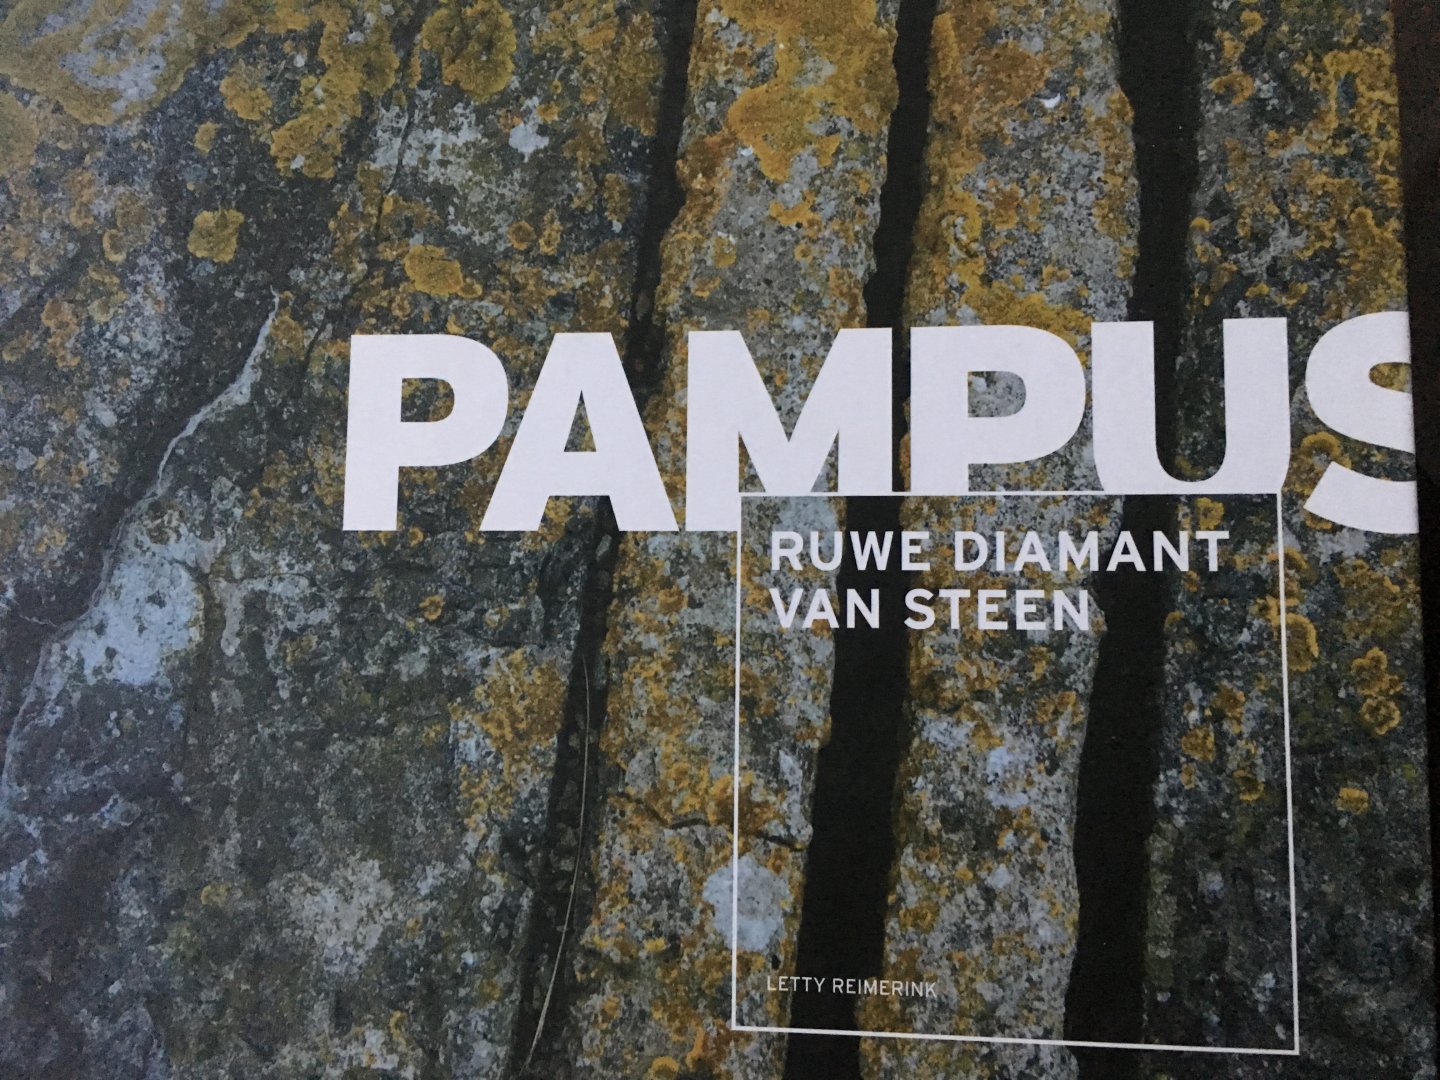 Letty Reimerink - Pampus, ruwe diamant van steen